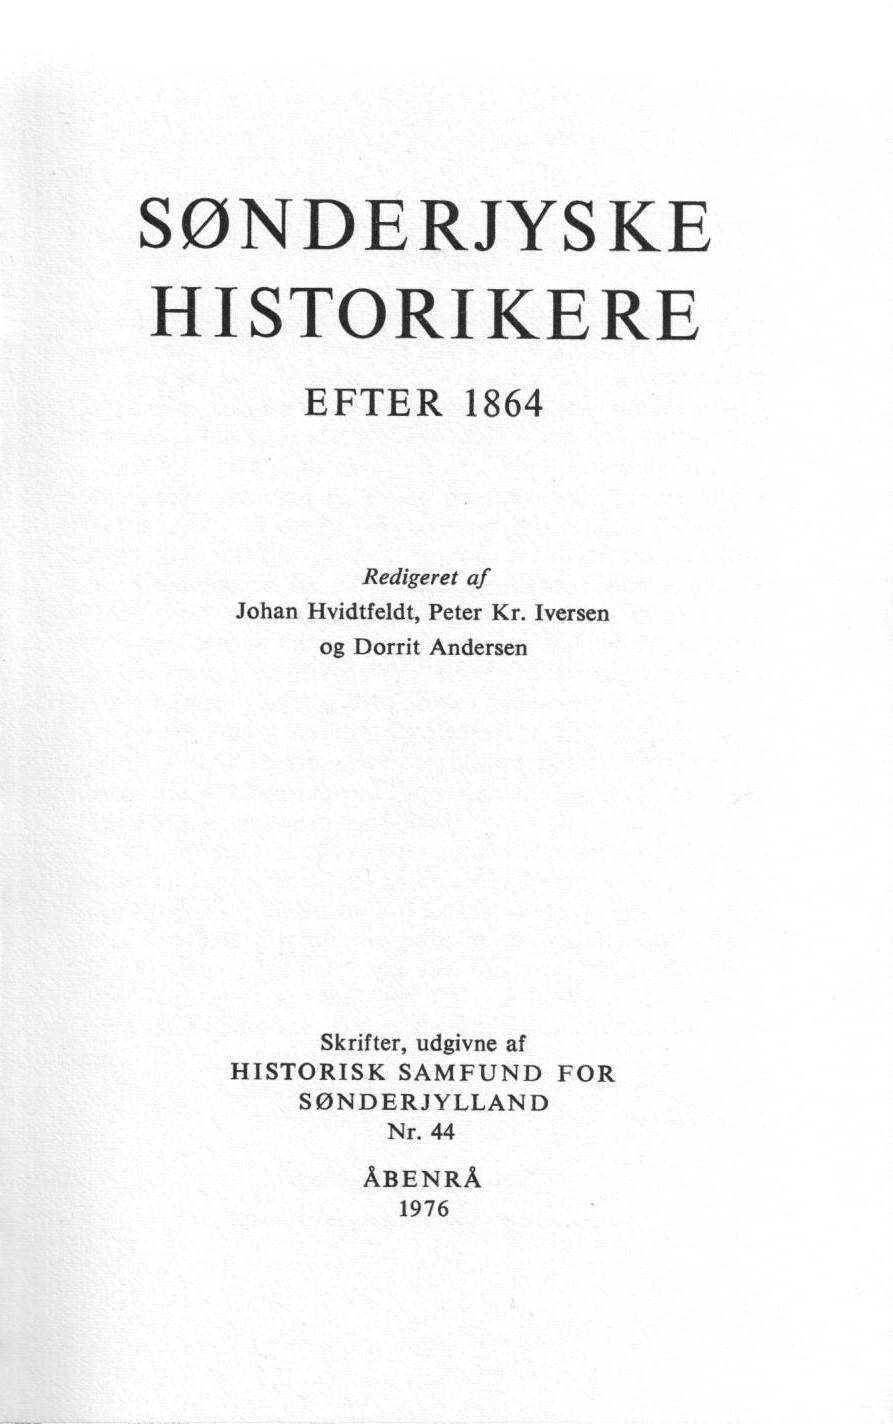 Sønderjyske historikere efter 1864